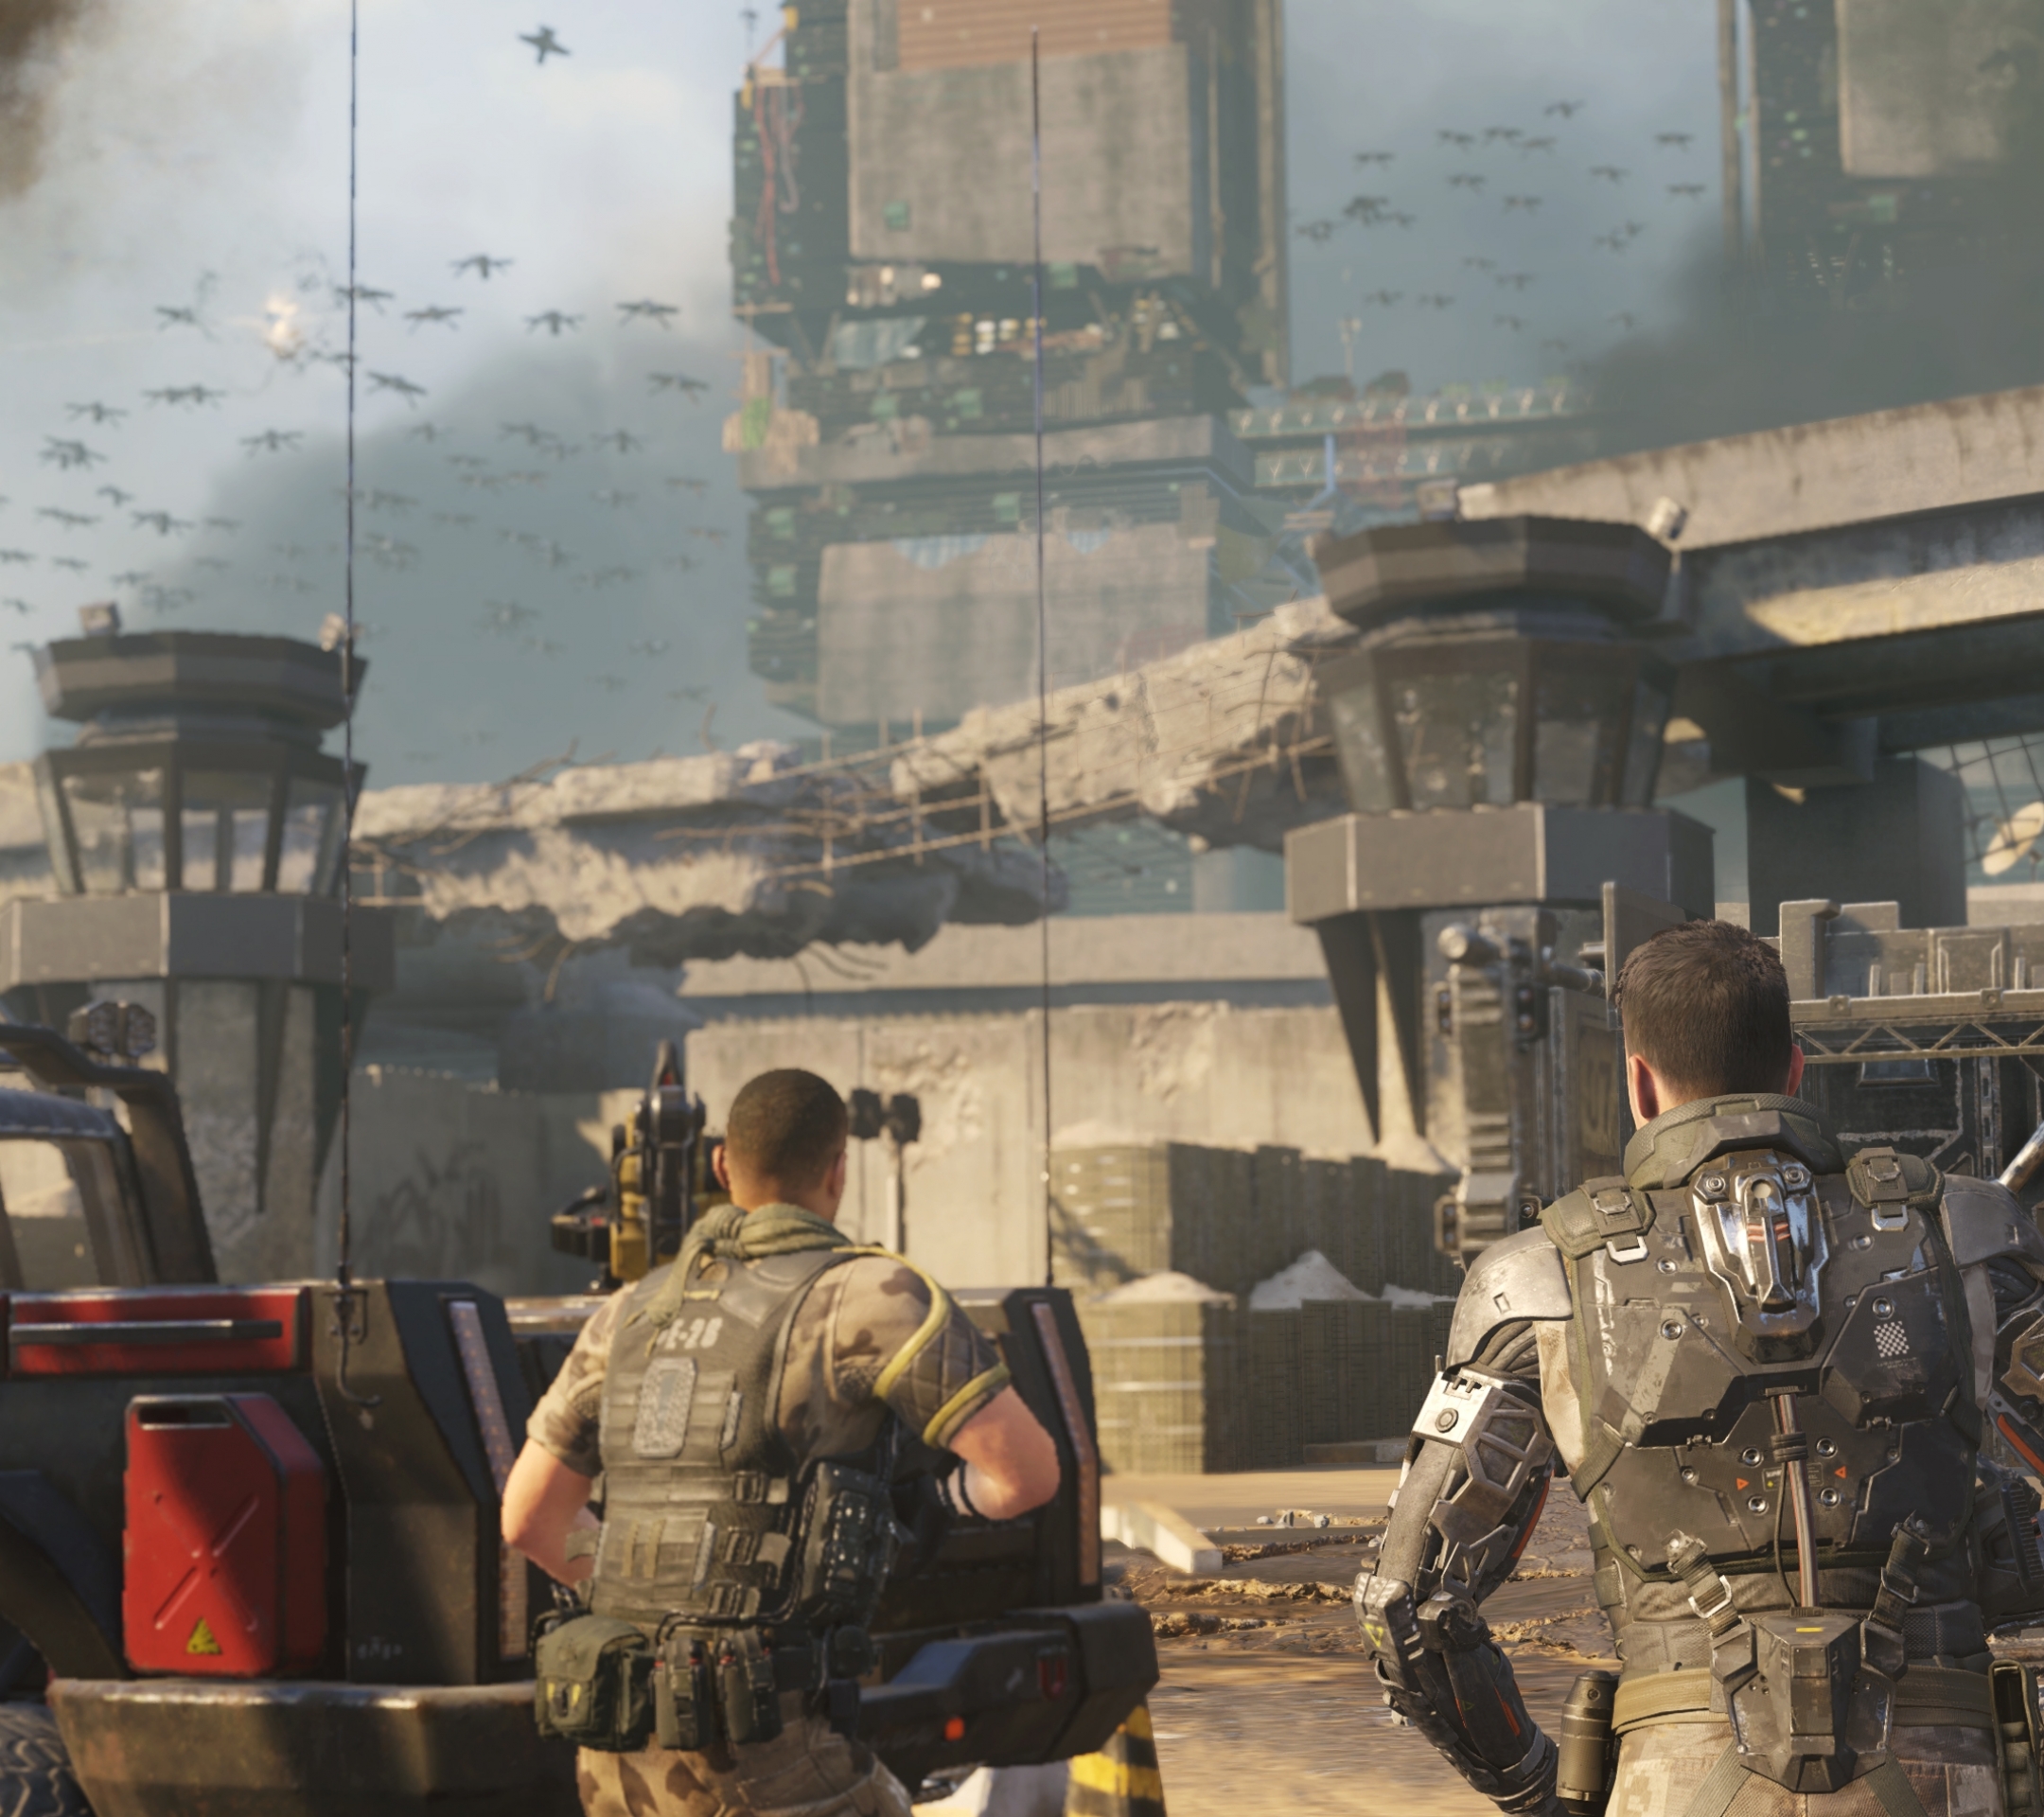 Скачать обои бесплатно Call Of Duty, Видеоигры, Зов Долга, Служебный Долг: Black Ops Iii картинка на рабочий стол ПК